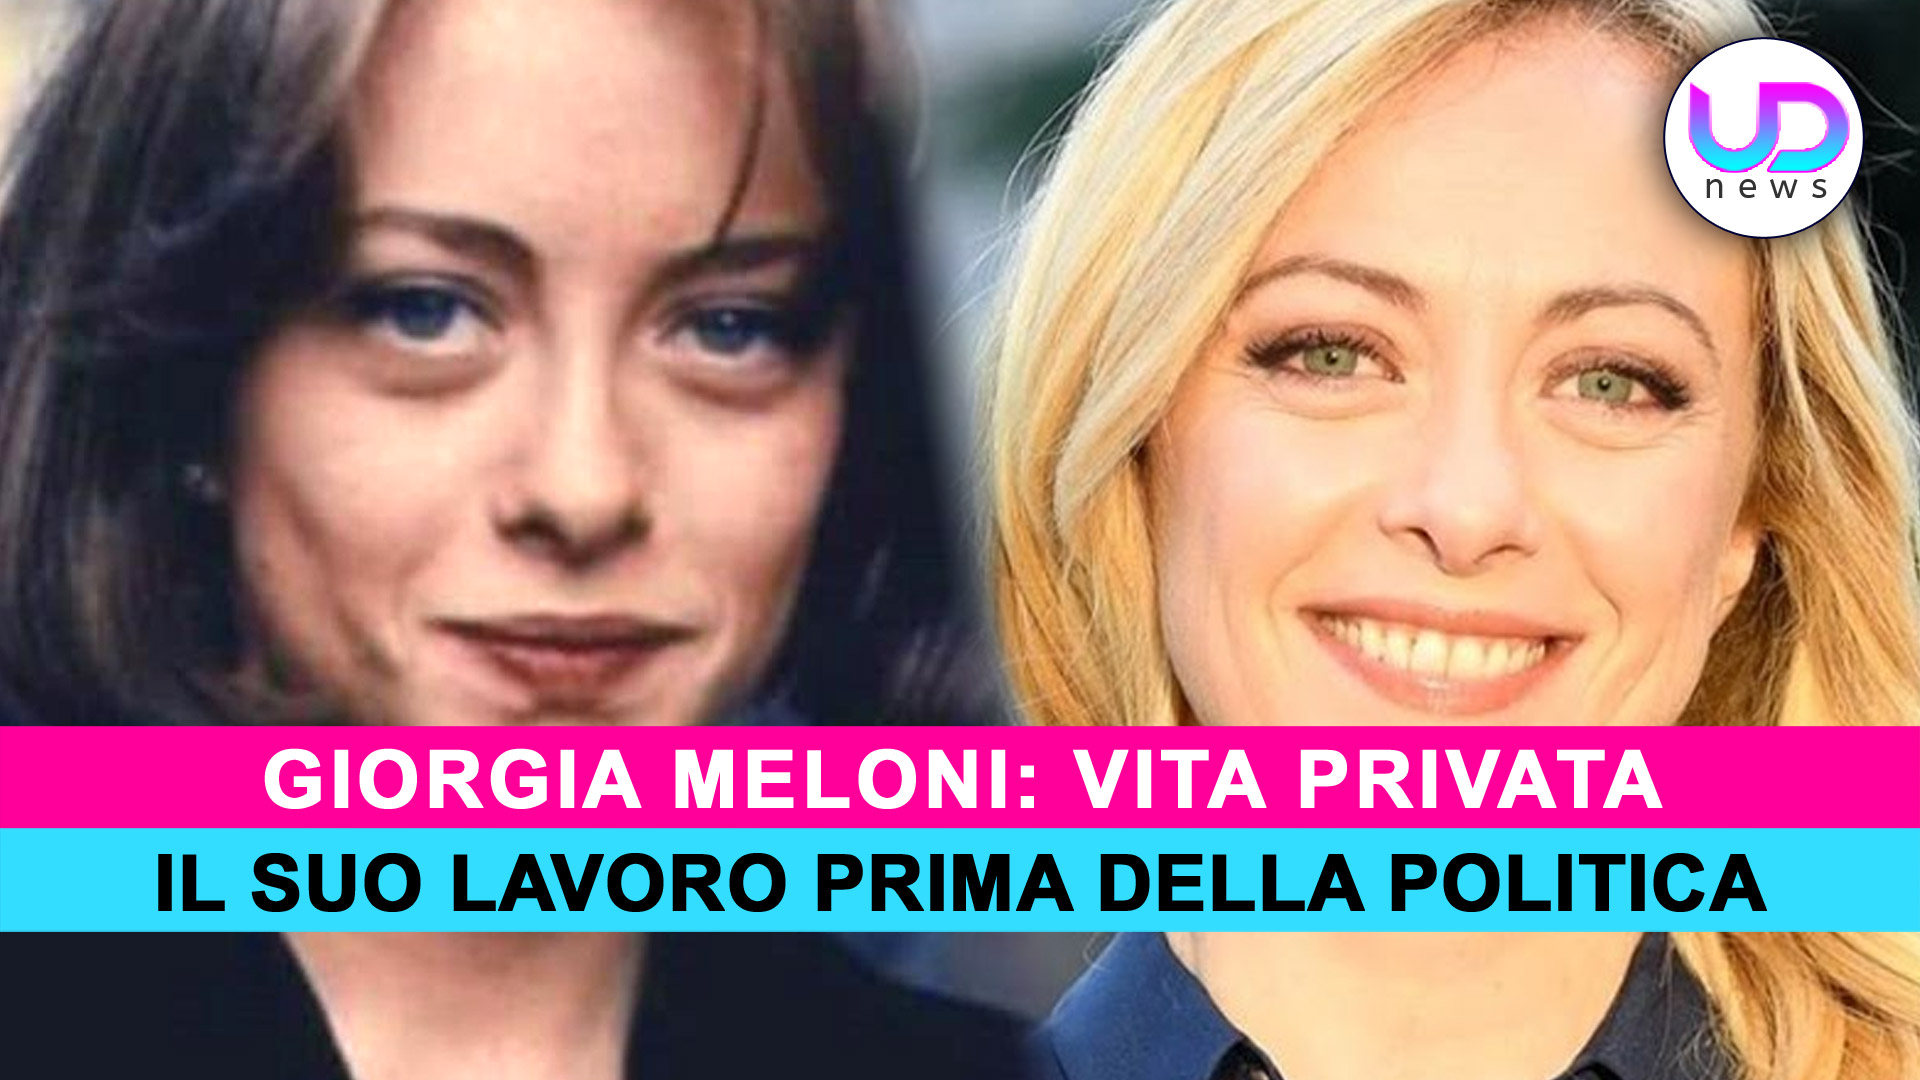 Giorgia Meloni: Ecco Che Lavoro Faceva Prima Di Entrare In Politica!